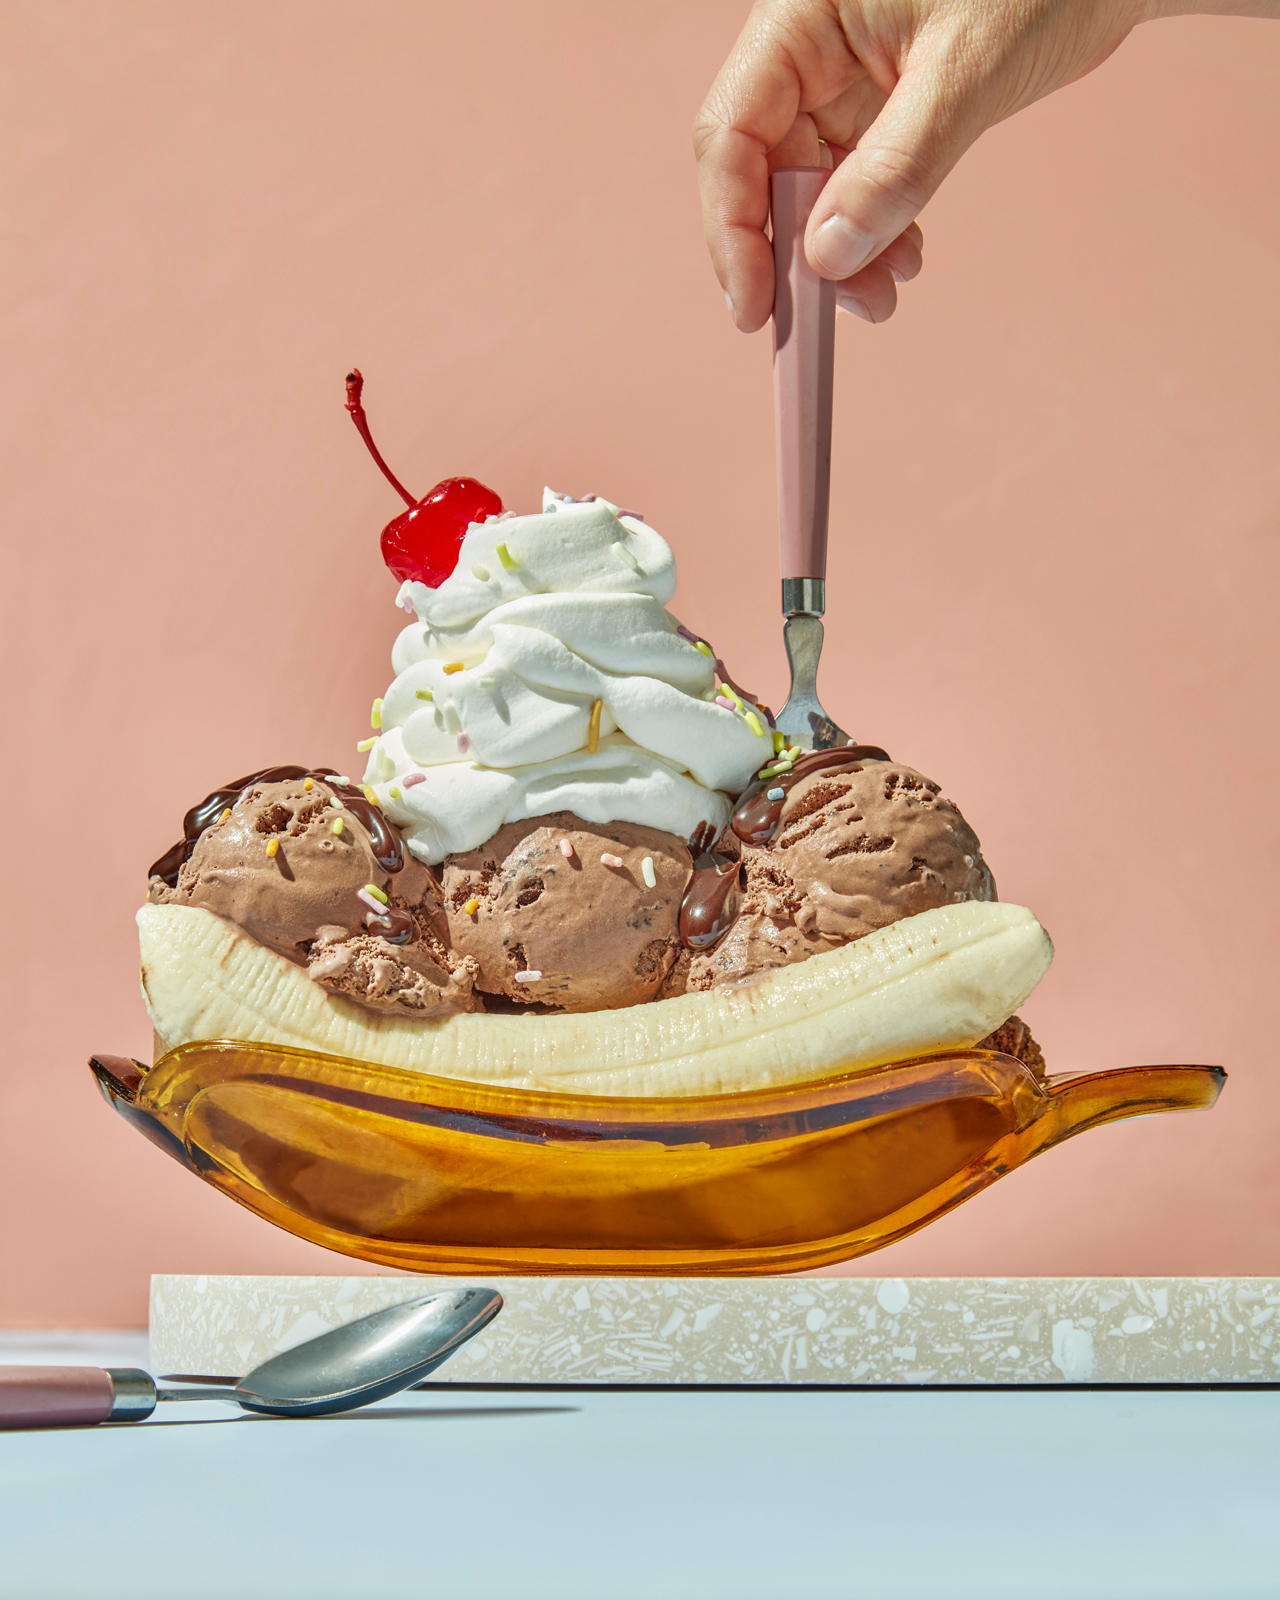 Dessert in orange banana peel shaped glassware, unique serving ideas for ice cream 